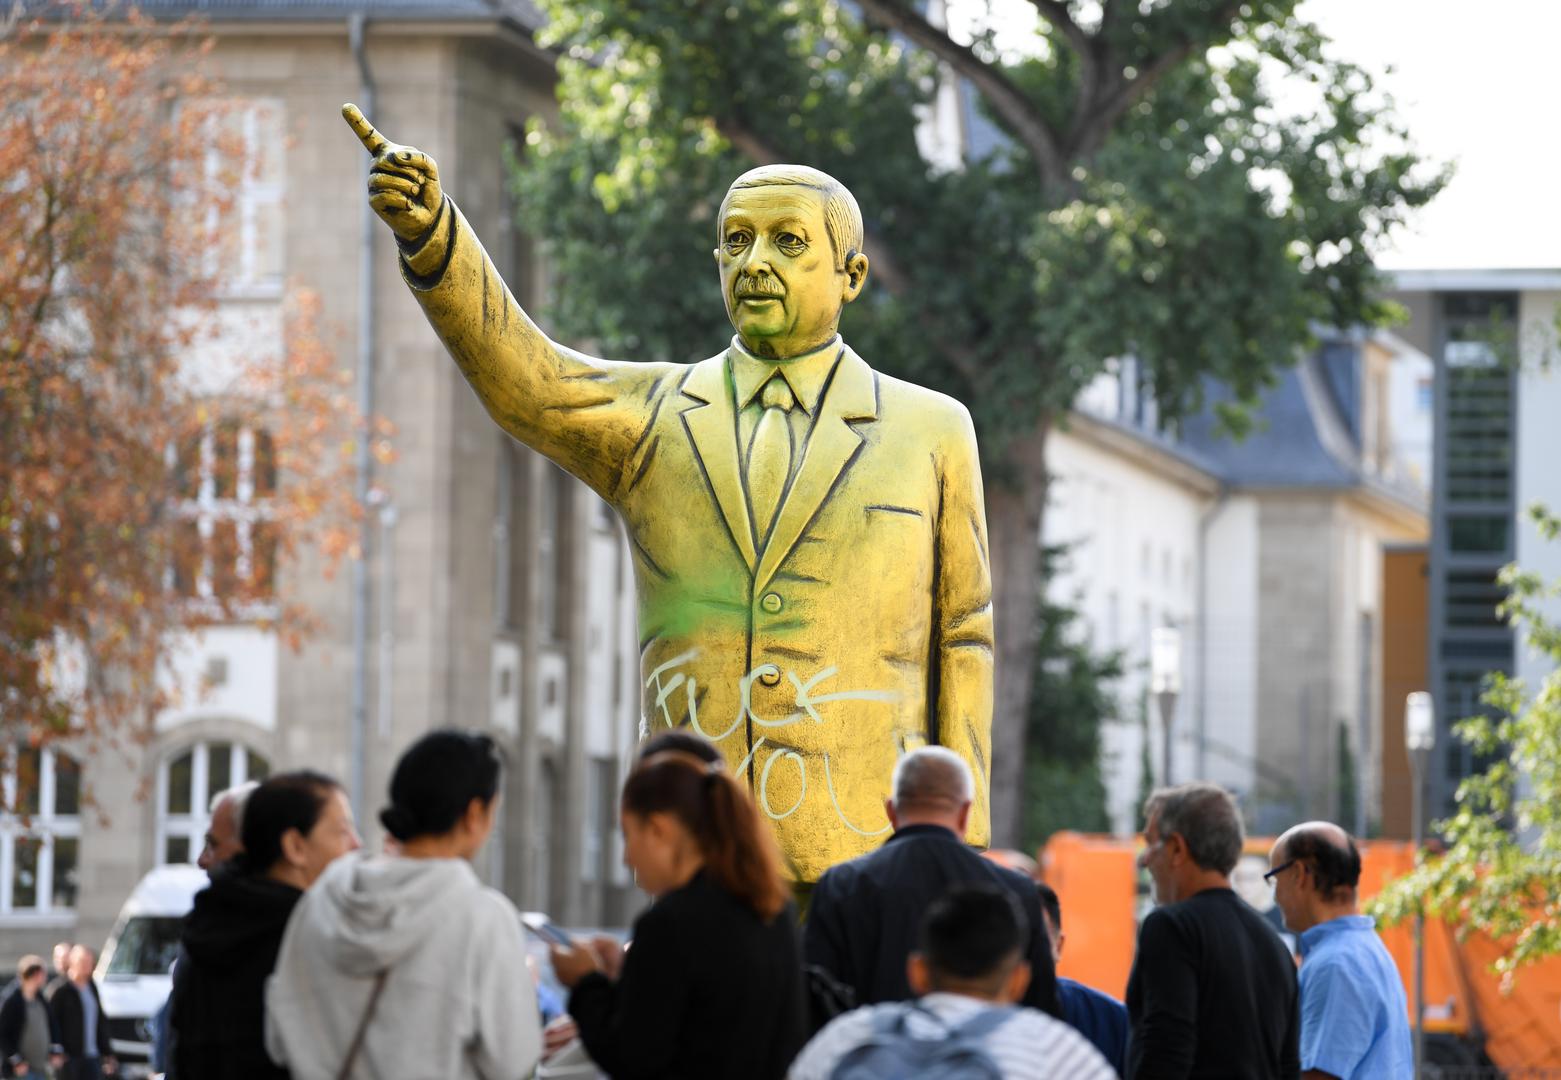 Zlatni spomenik turskog predsjednika Recepa Tayyipa Erdogana postavljen je u Wiesbadenu u Njemačkoj u sklopu umjetničkog festivala koji se ove godine održava pod motom "Loše vijesti".